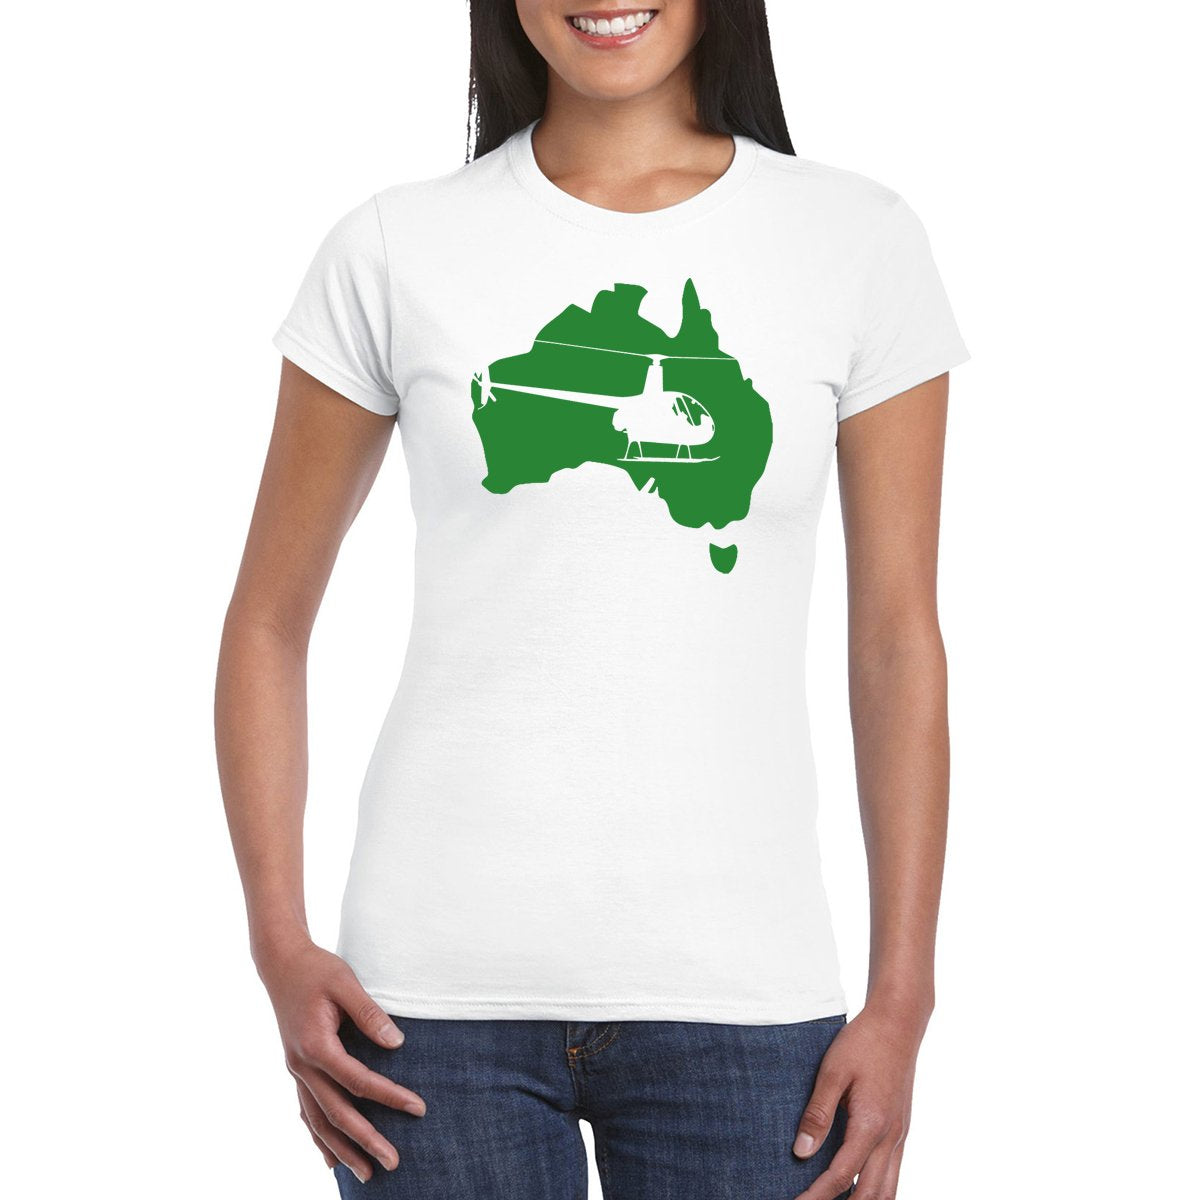 FLY AUS R22 Women's Aviation T-Shirt